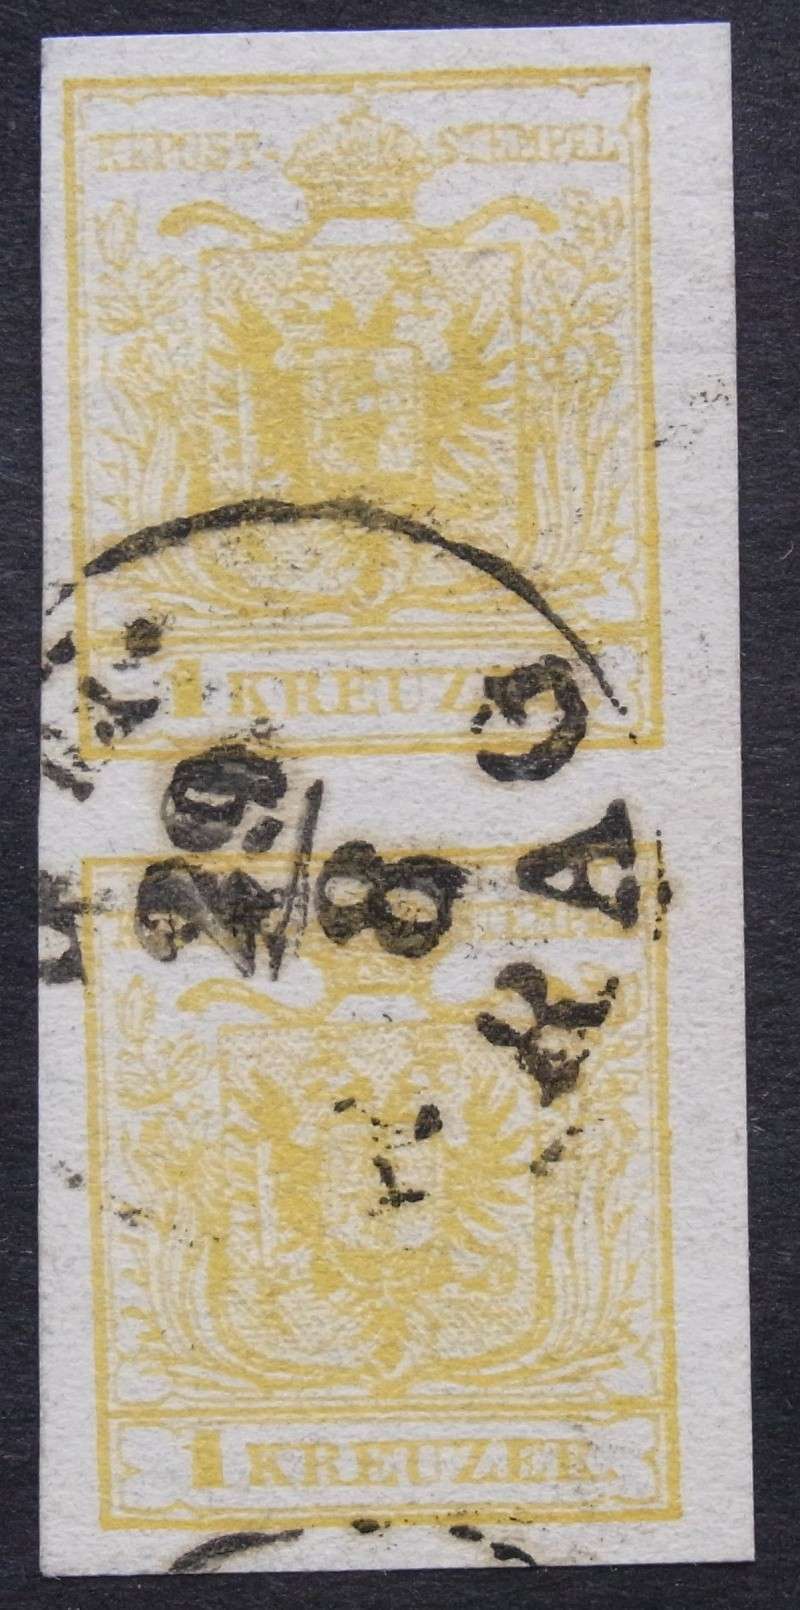 Marken - Die erste Österreichische Ausgabe 1850 Rimg0043